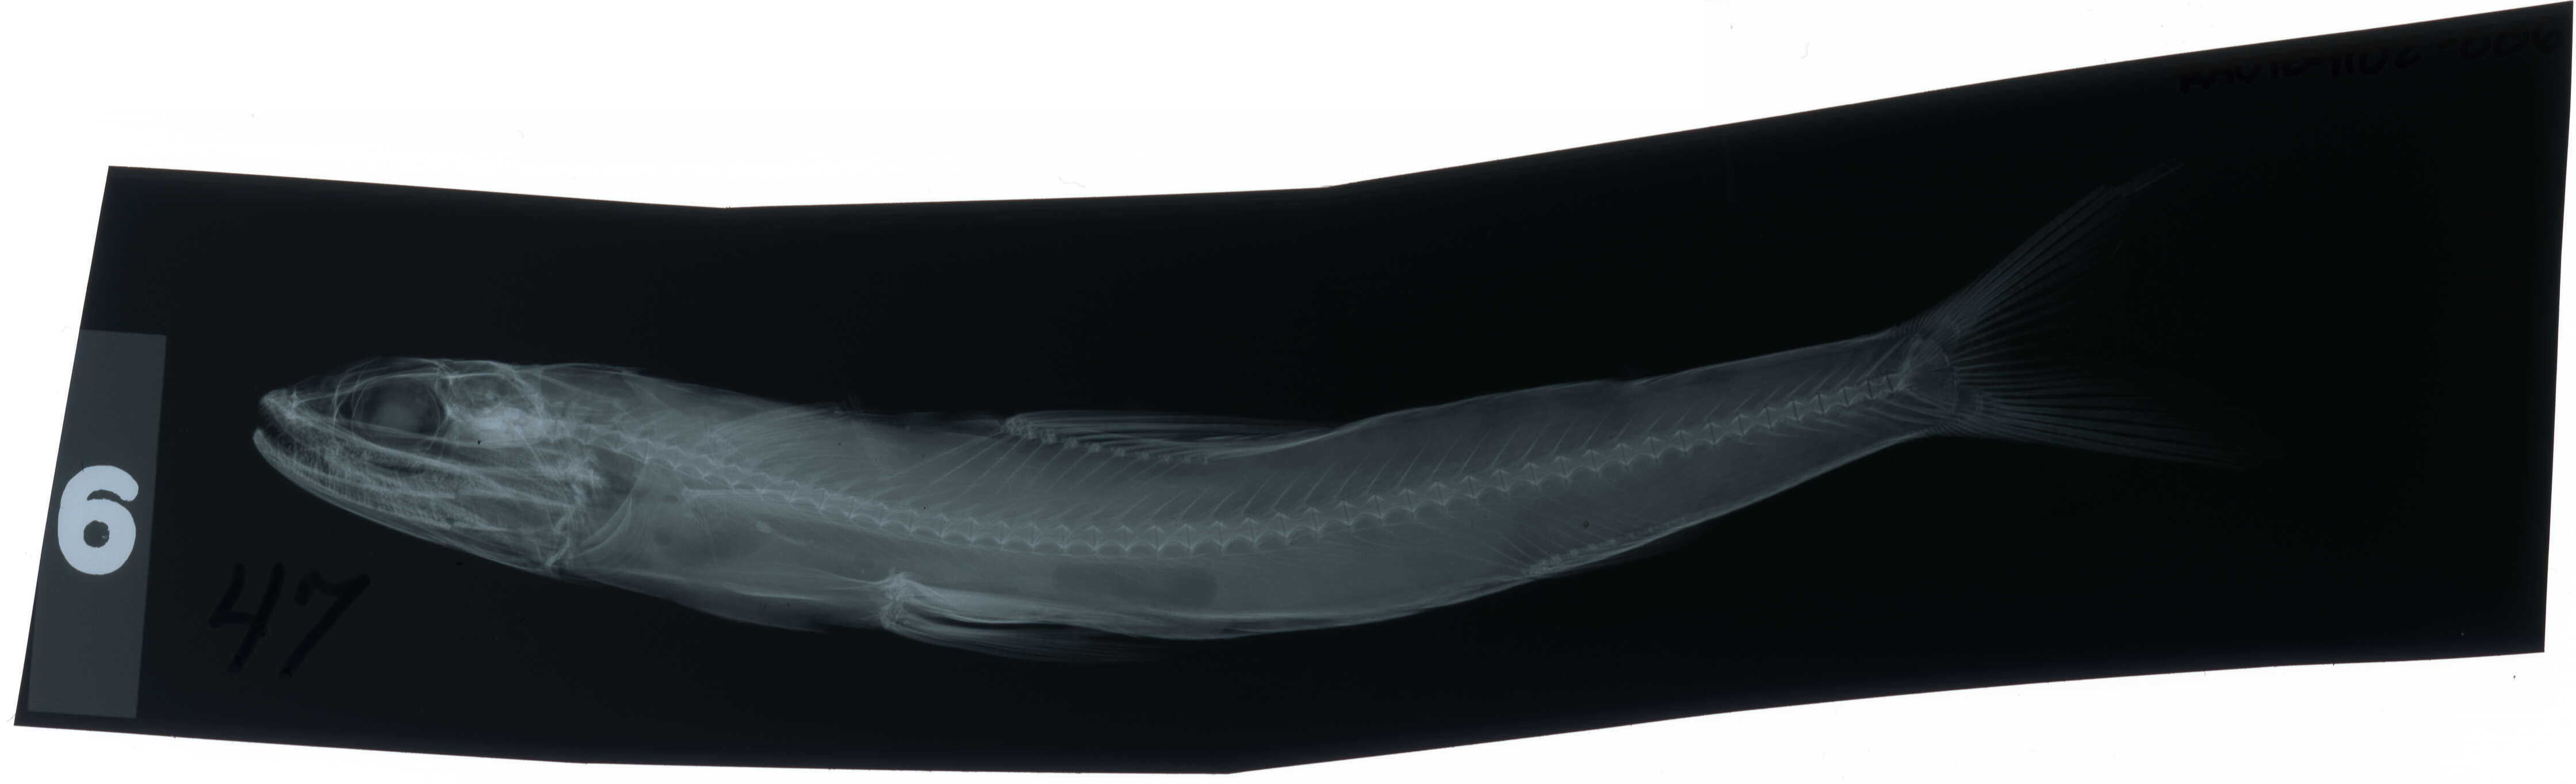 Image of Brushtooth lizardfish